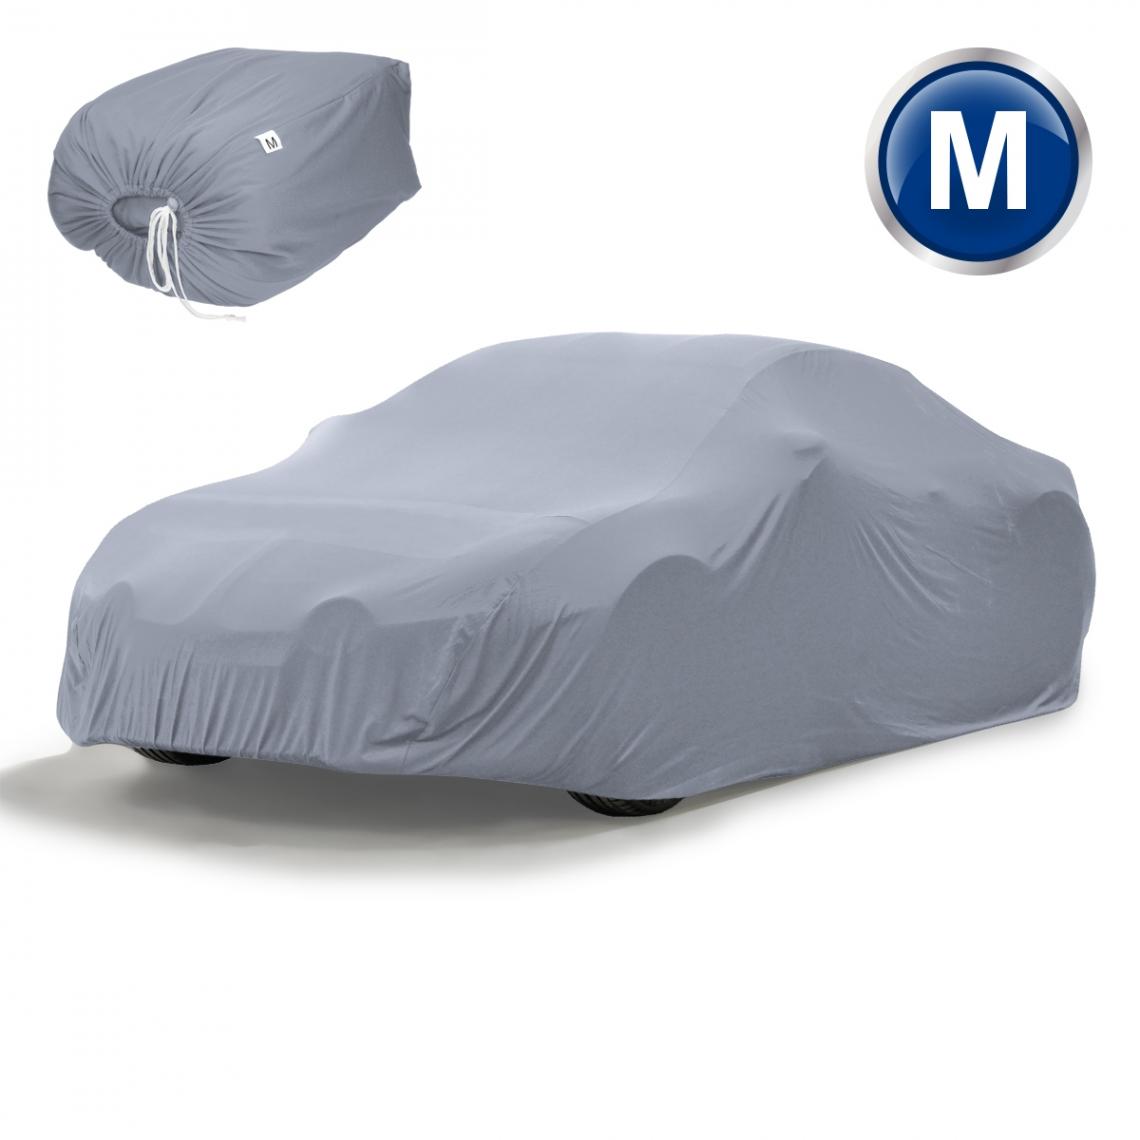 Ecd Germany - Housse de protection intérieur voiture couverture tissé gris 431 x 165 x 119 cm - Accessoires Mobilité électrique